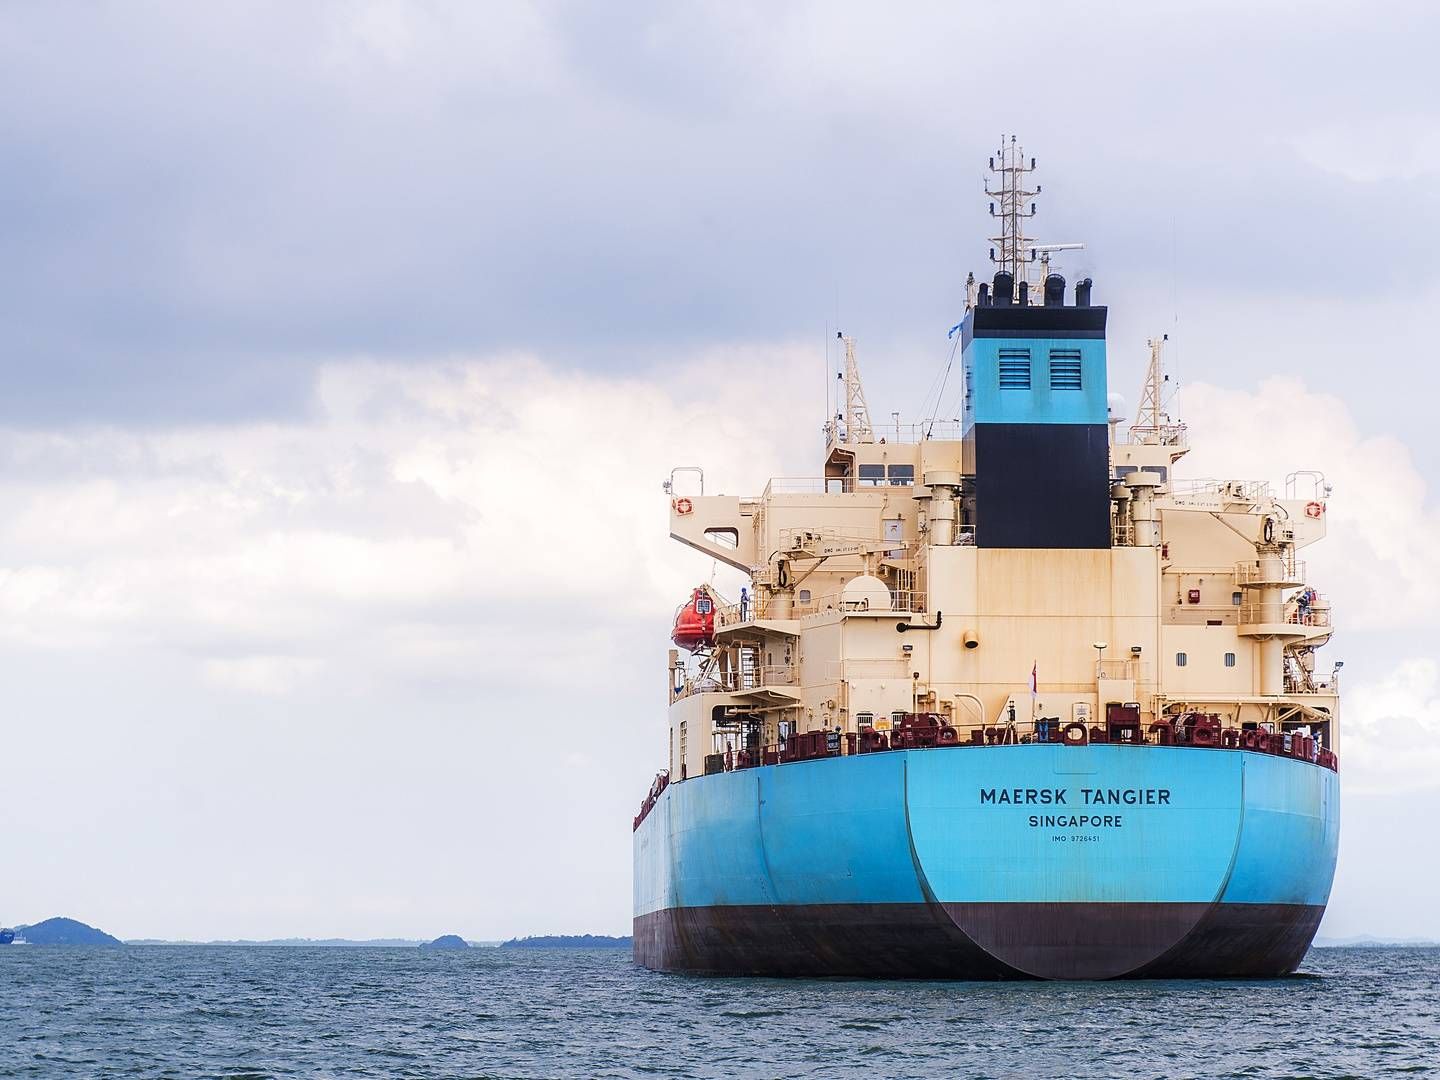 Men tankskibene har dog en mulighed for at skippe sejlads gennem Det Røde Hav og Suez-kanalen og finde alternative ruter, skriver Bloomberg, der har set en meddelelse fra Maersk Tankers. | Foto: Pr/maersk Tankers